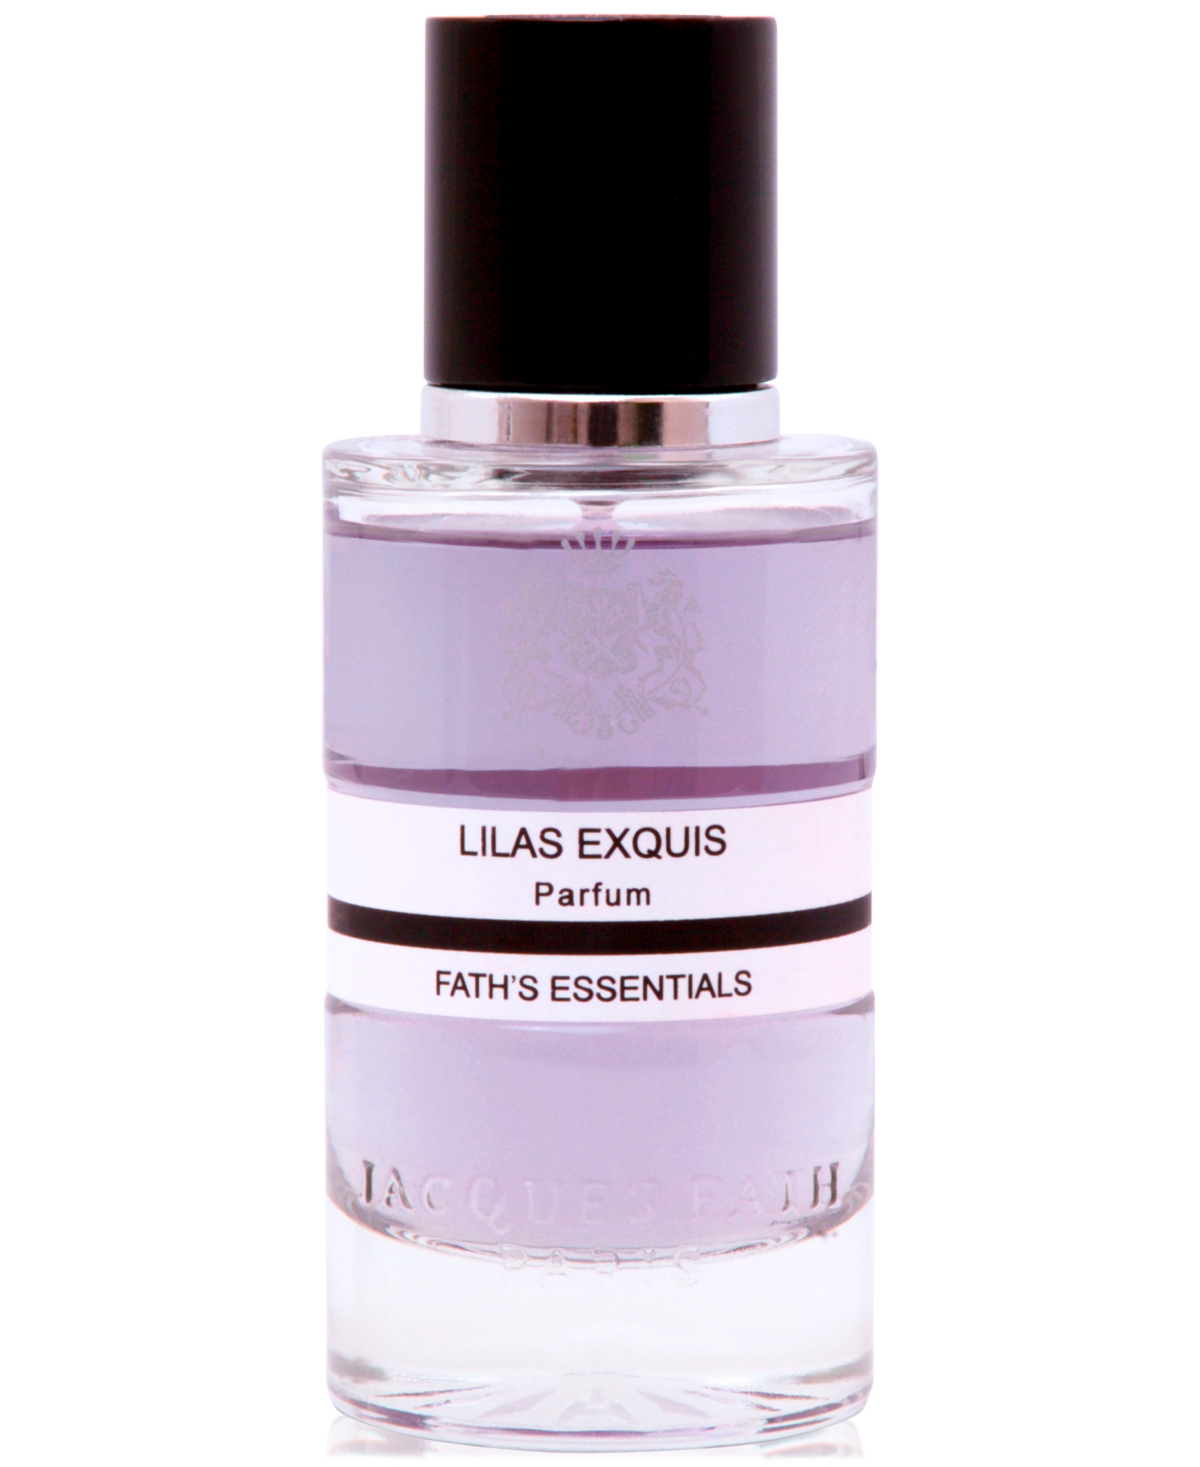 Lilas Exquis Parfum, 3.4 oz.